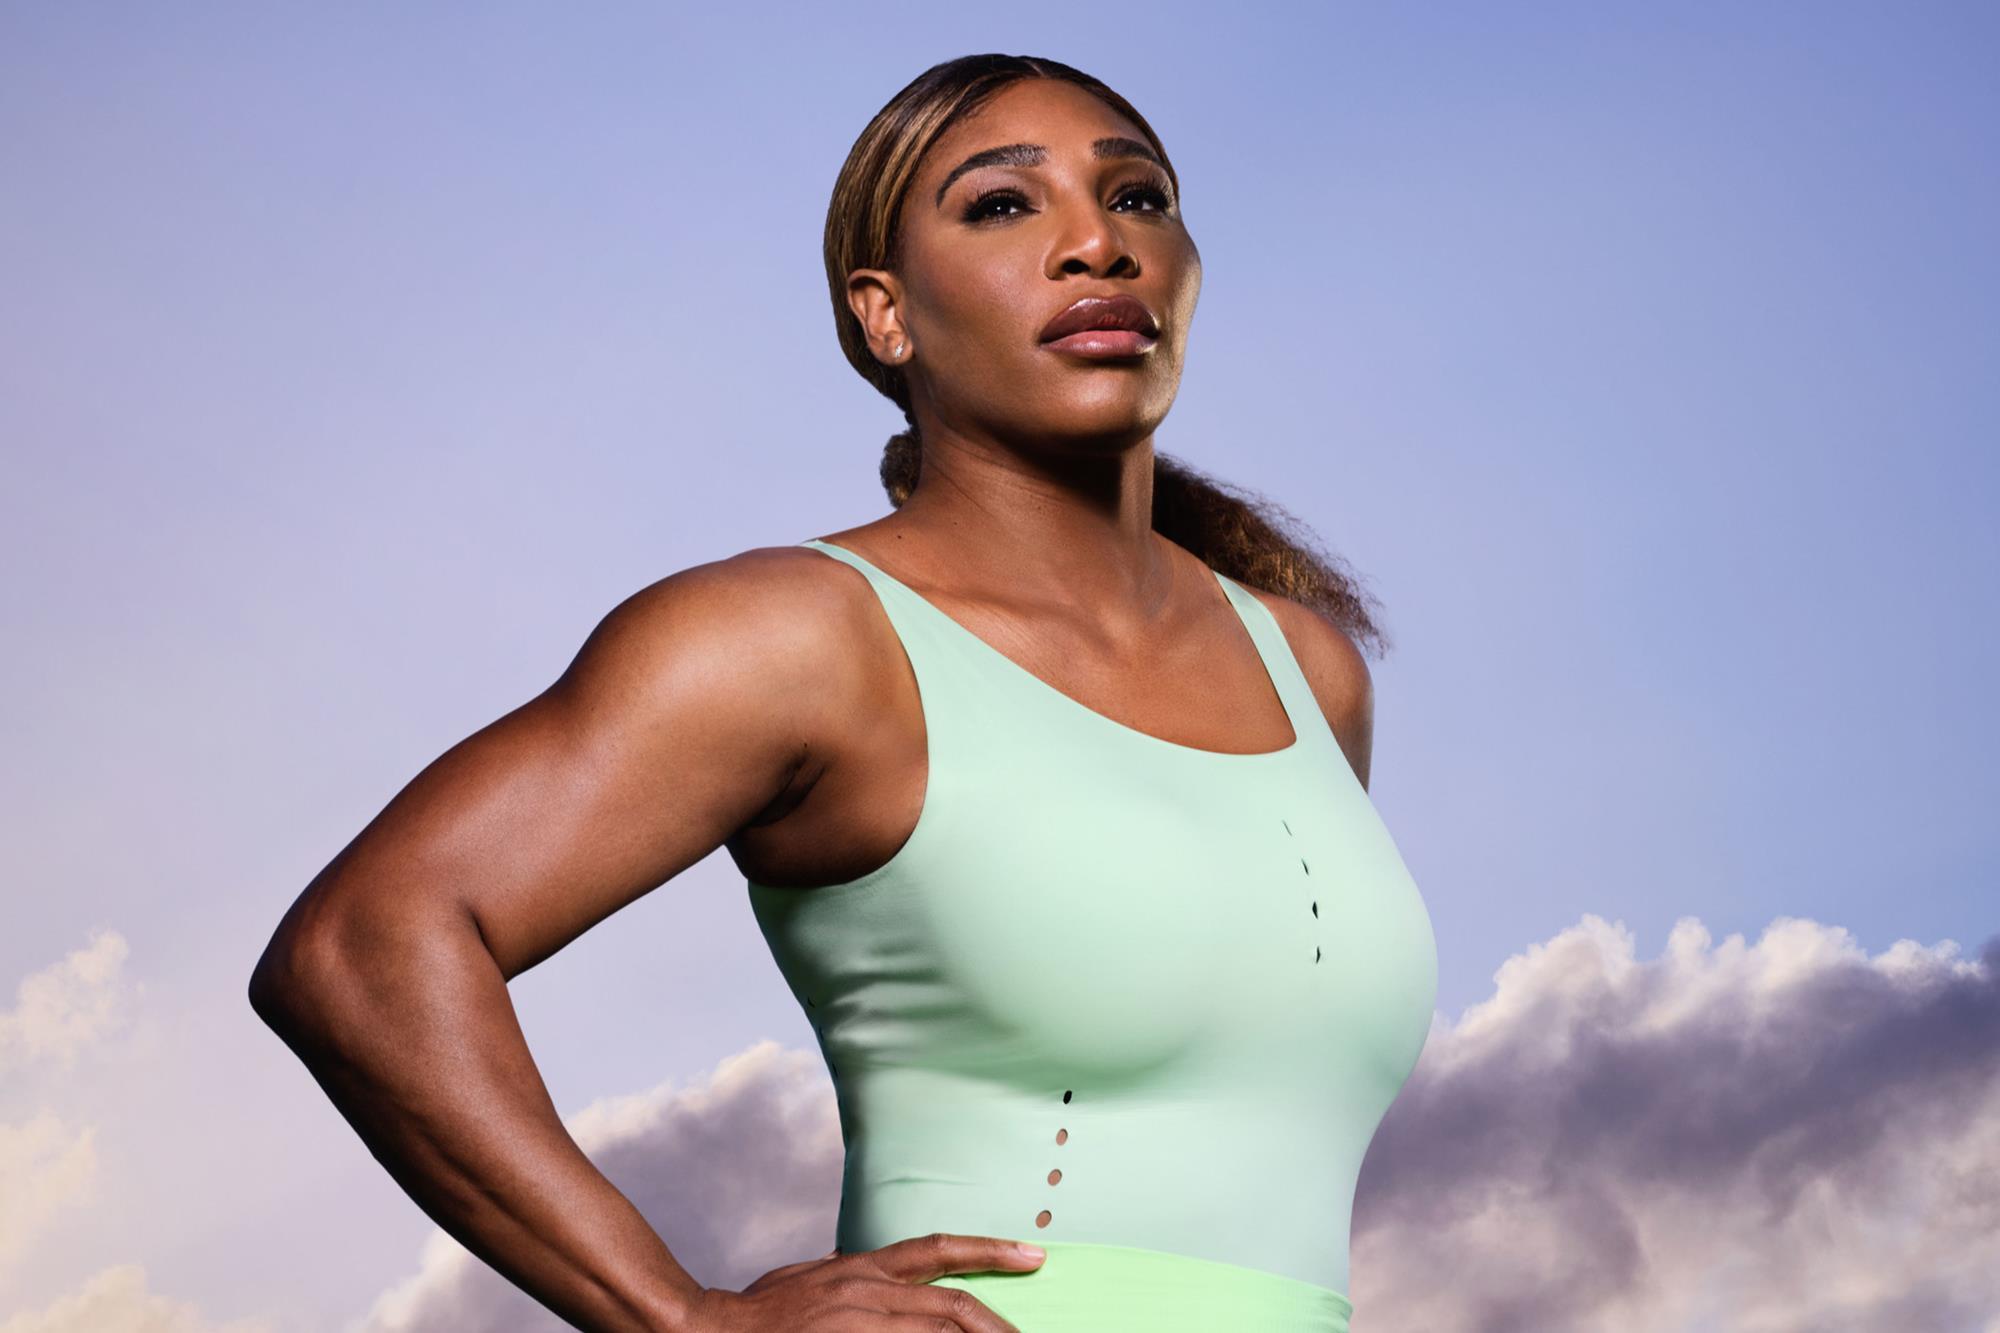 Serena Williams first athlete to receive Fashion Icon award